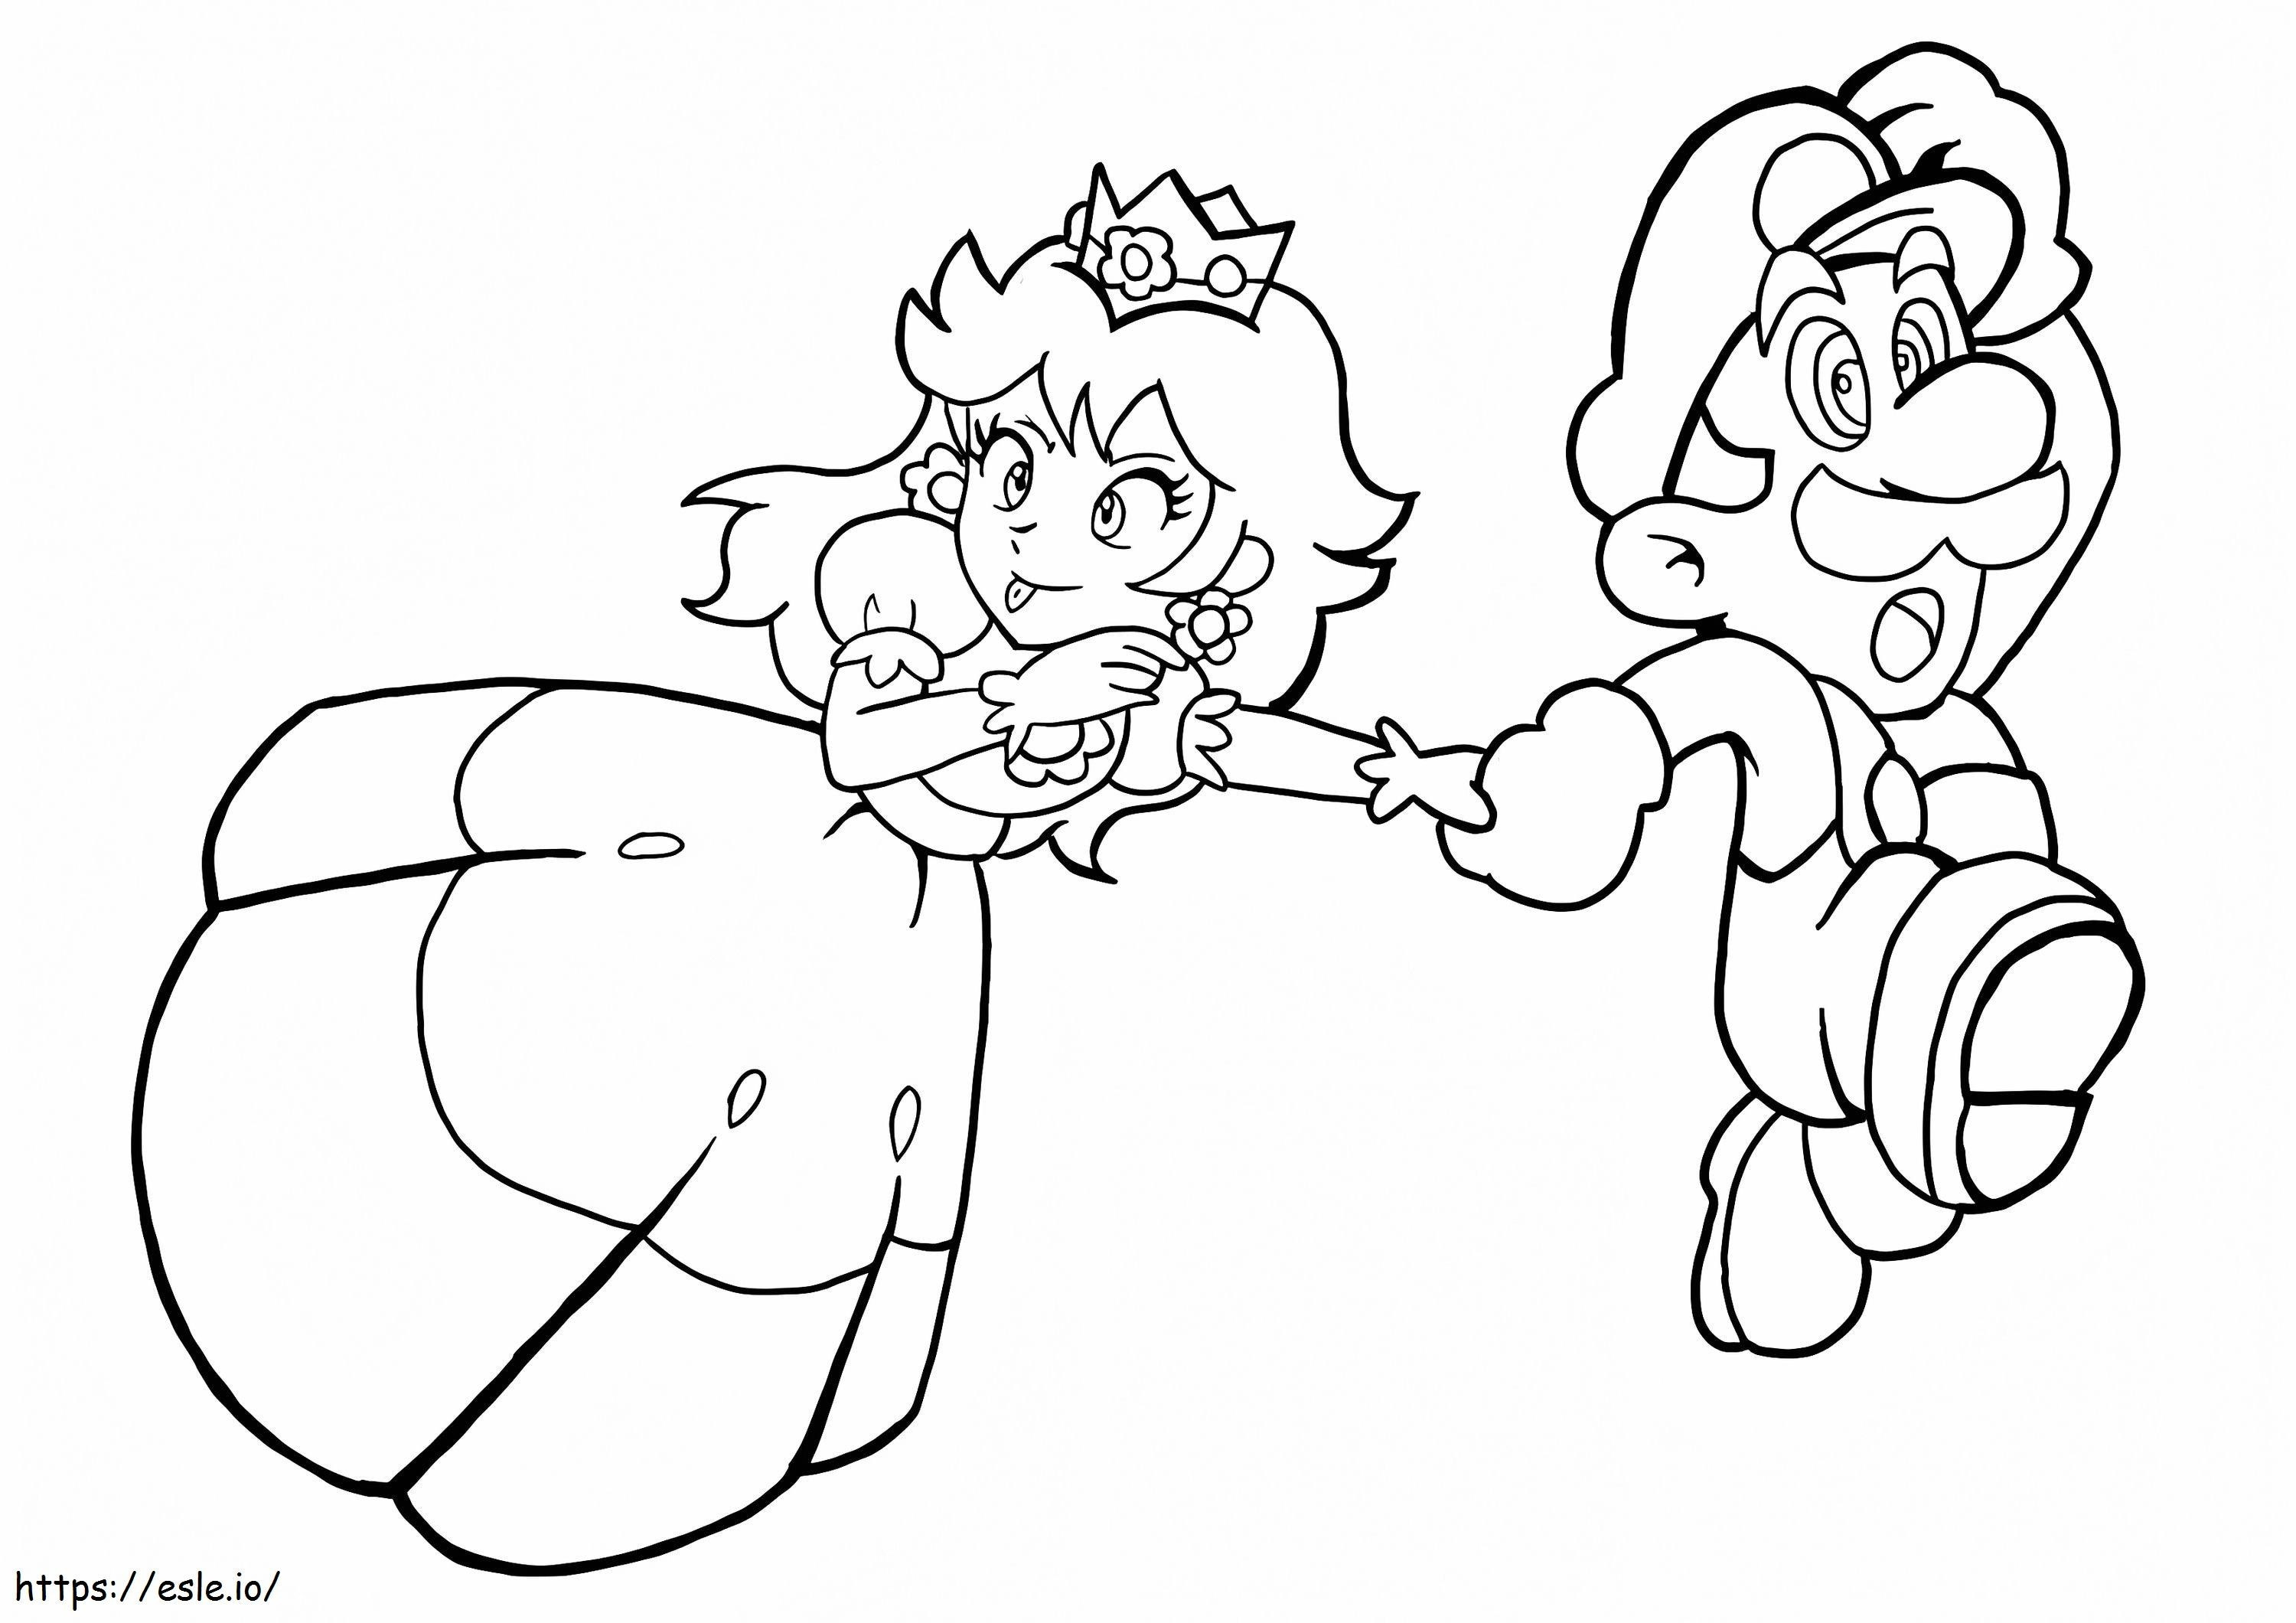 Zabawna księżniczka Peach i biegający Mario kolorowanka